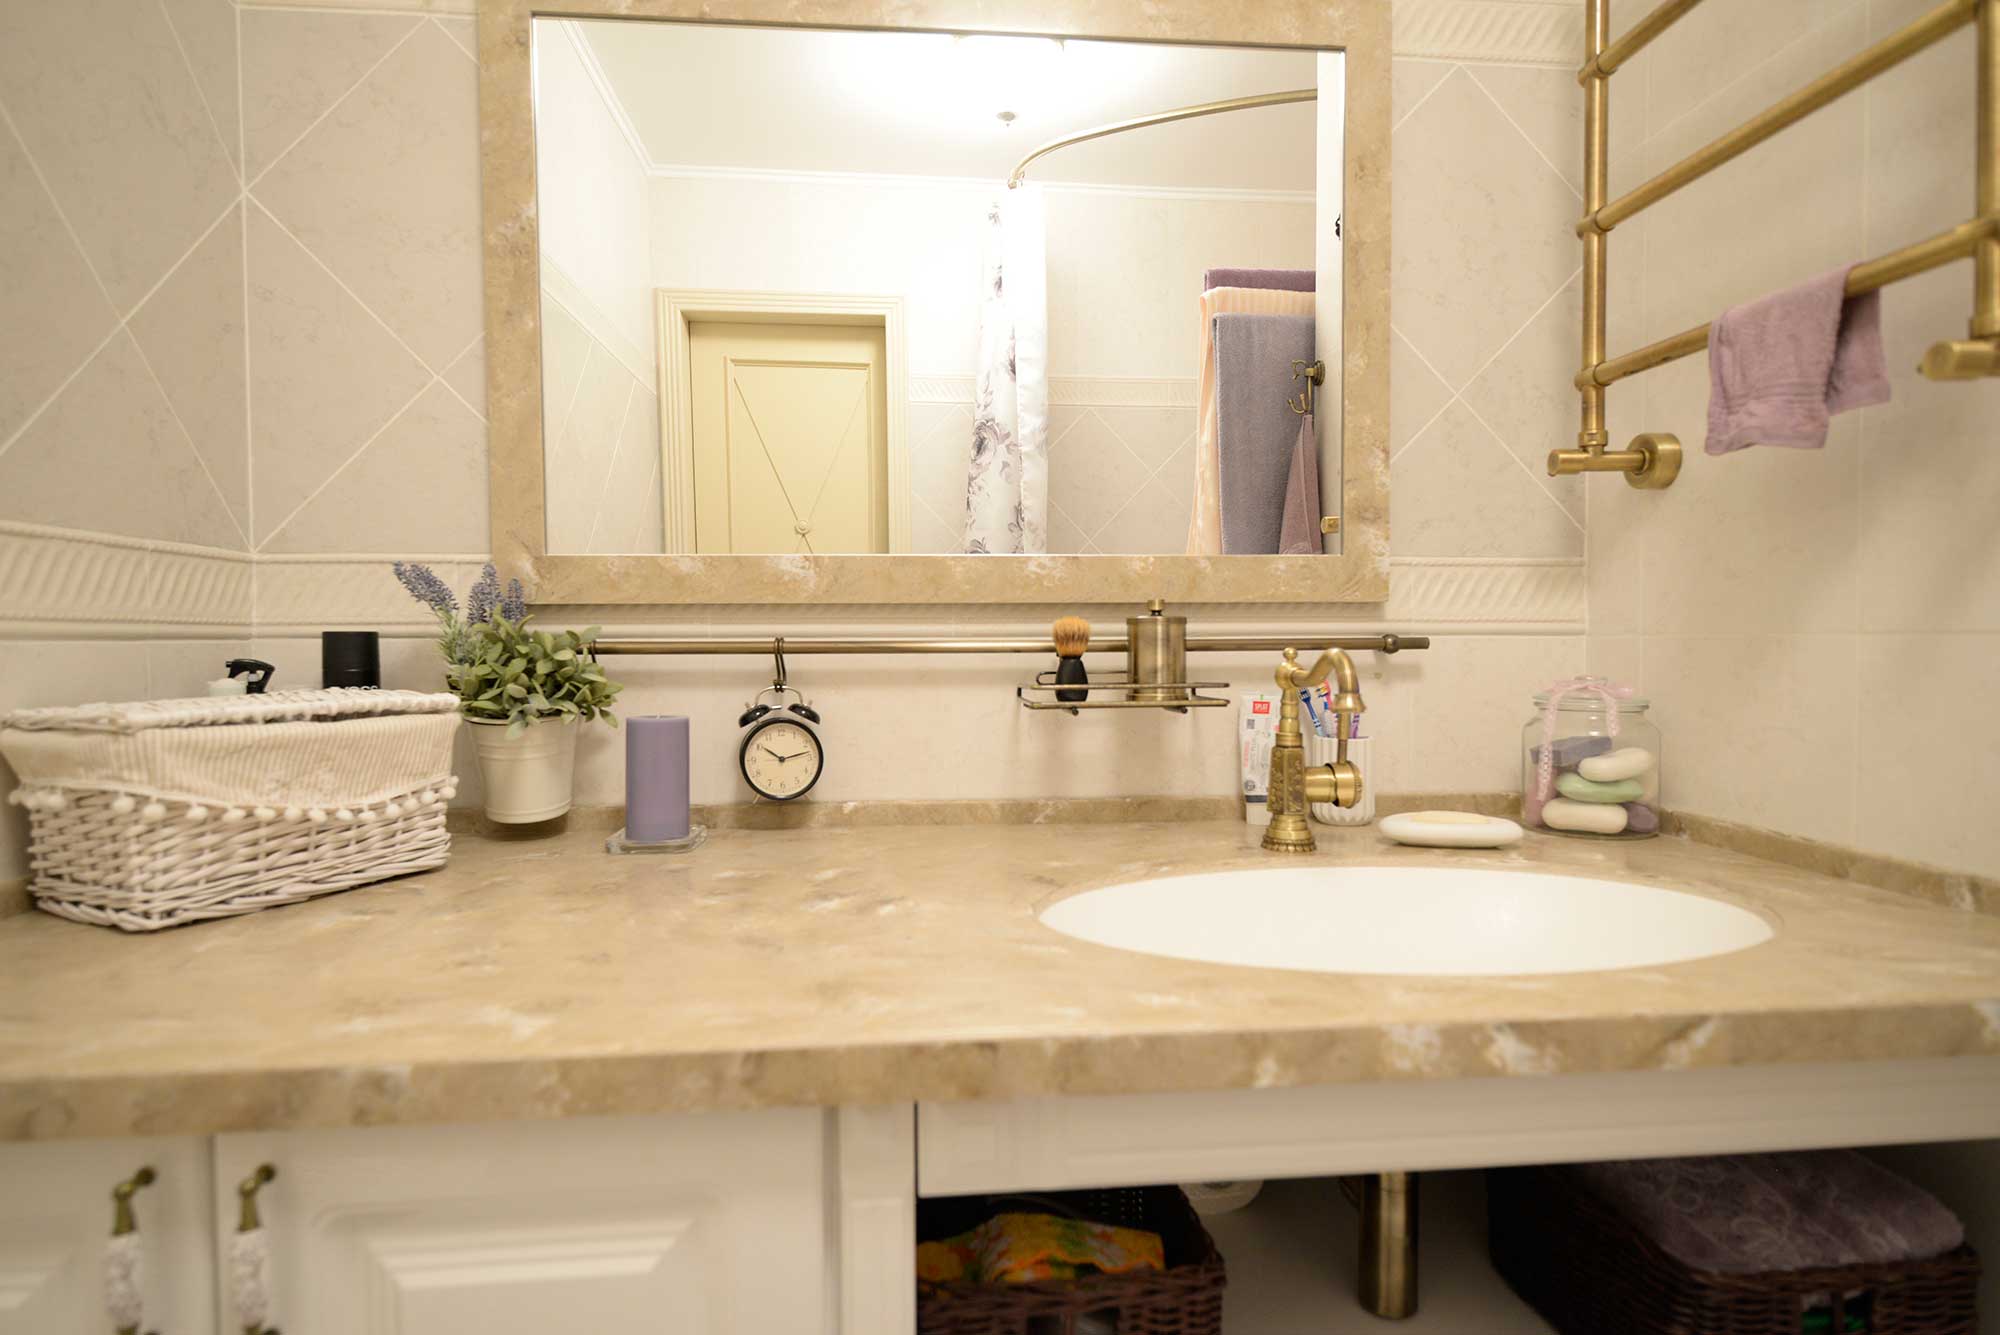 столешница из натурального камня и зеркало с обрамлением из камня в ванной прованс